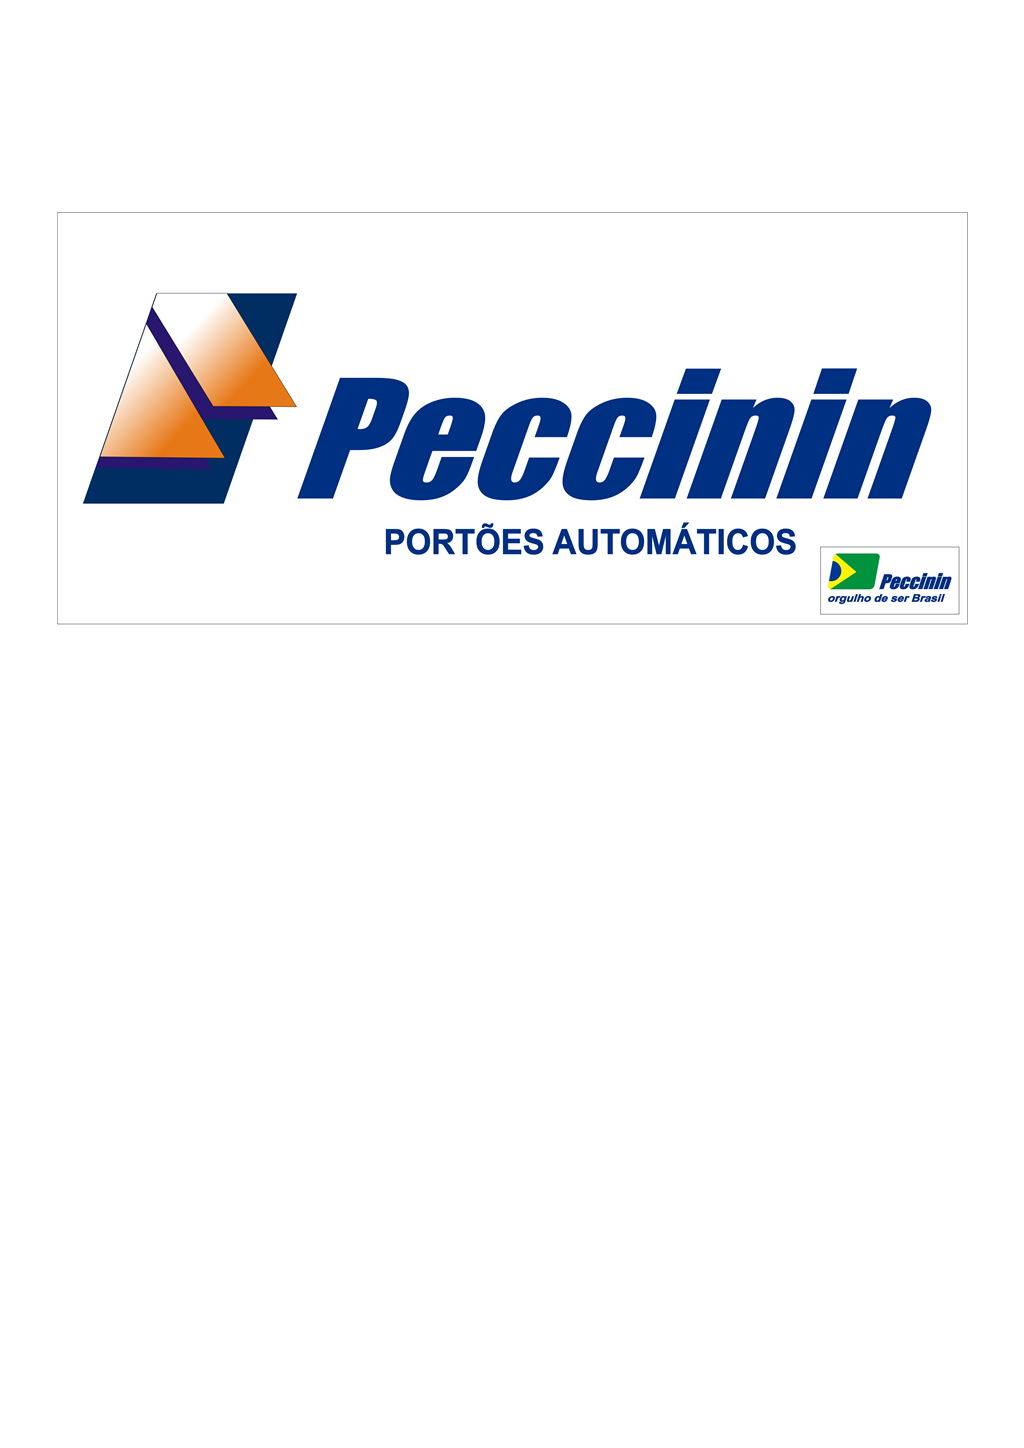 Peccinin logotype, transparent .png, medium, large